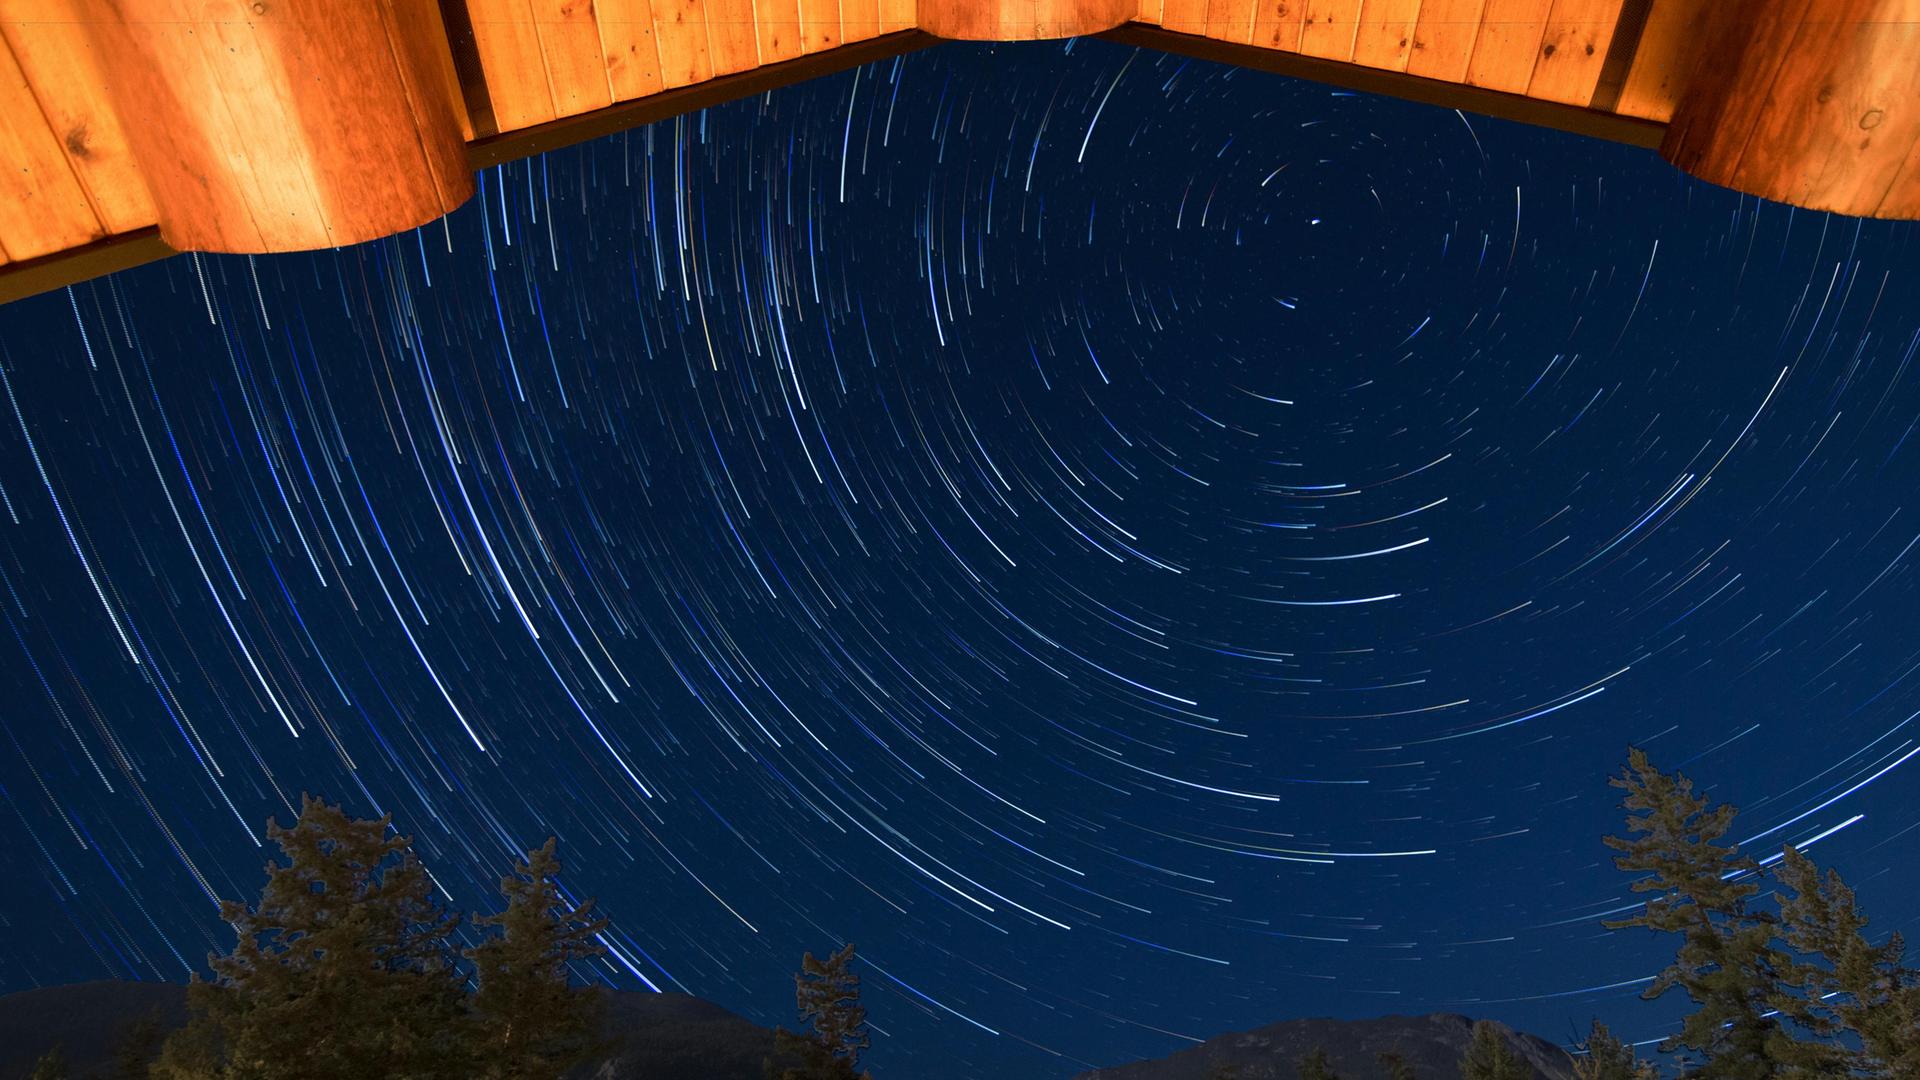 Blick von einer Hütte in den Himmel, auf dem sich kreisende Stern abbilden.